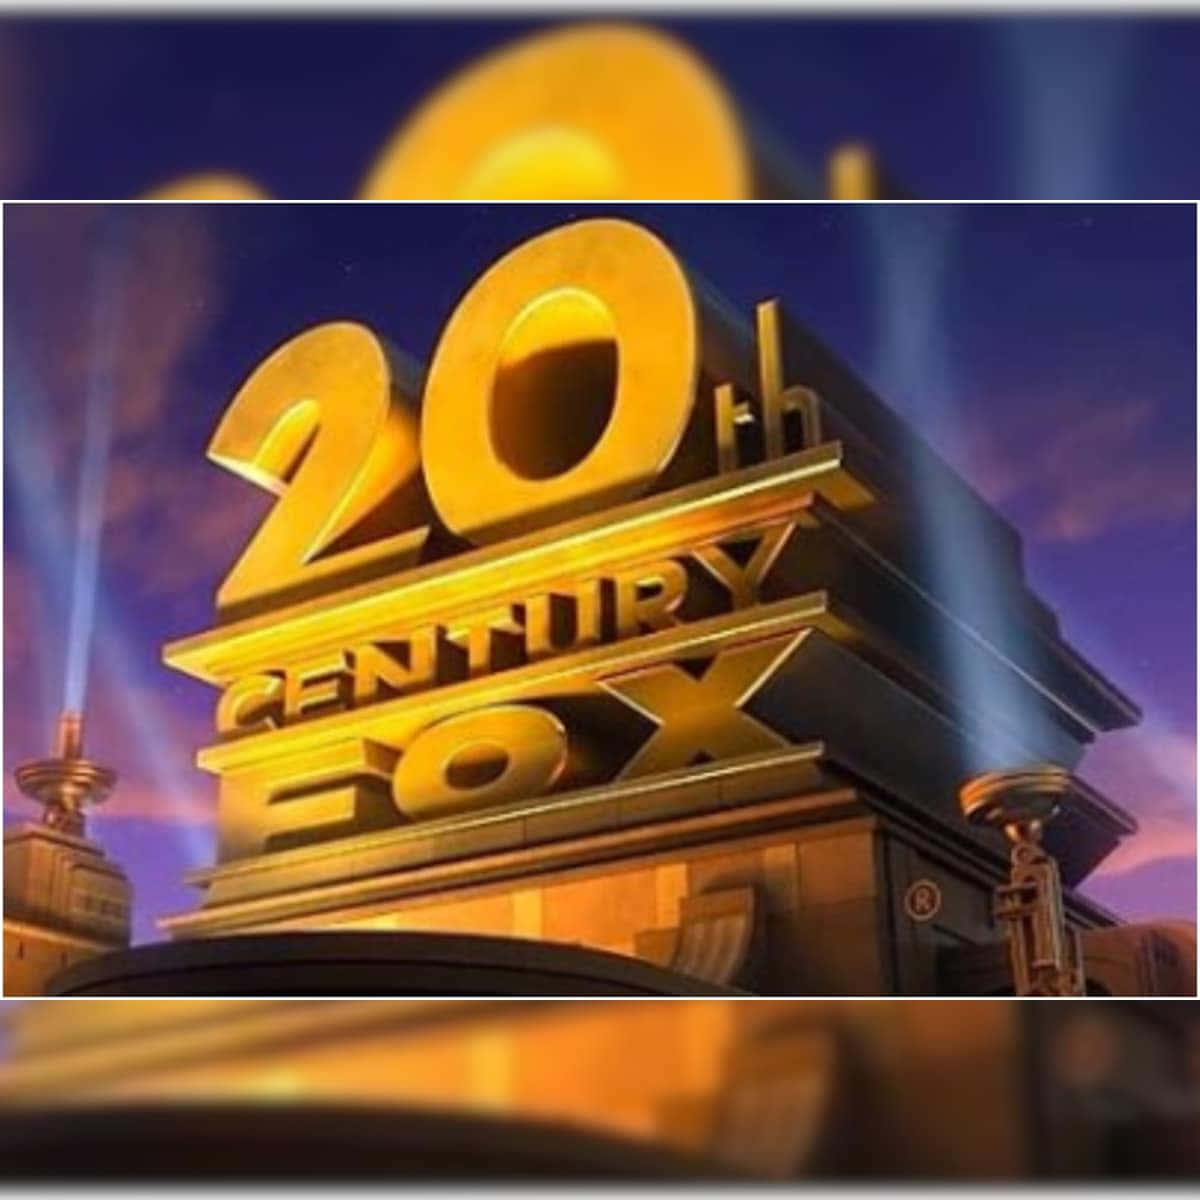 20thcentury Fox-logo Med Lys På Det.